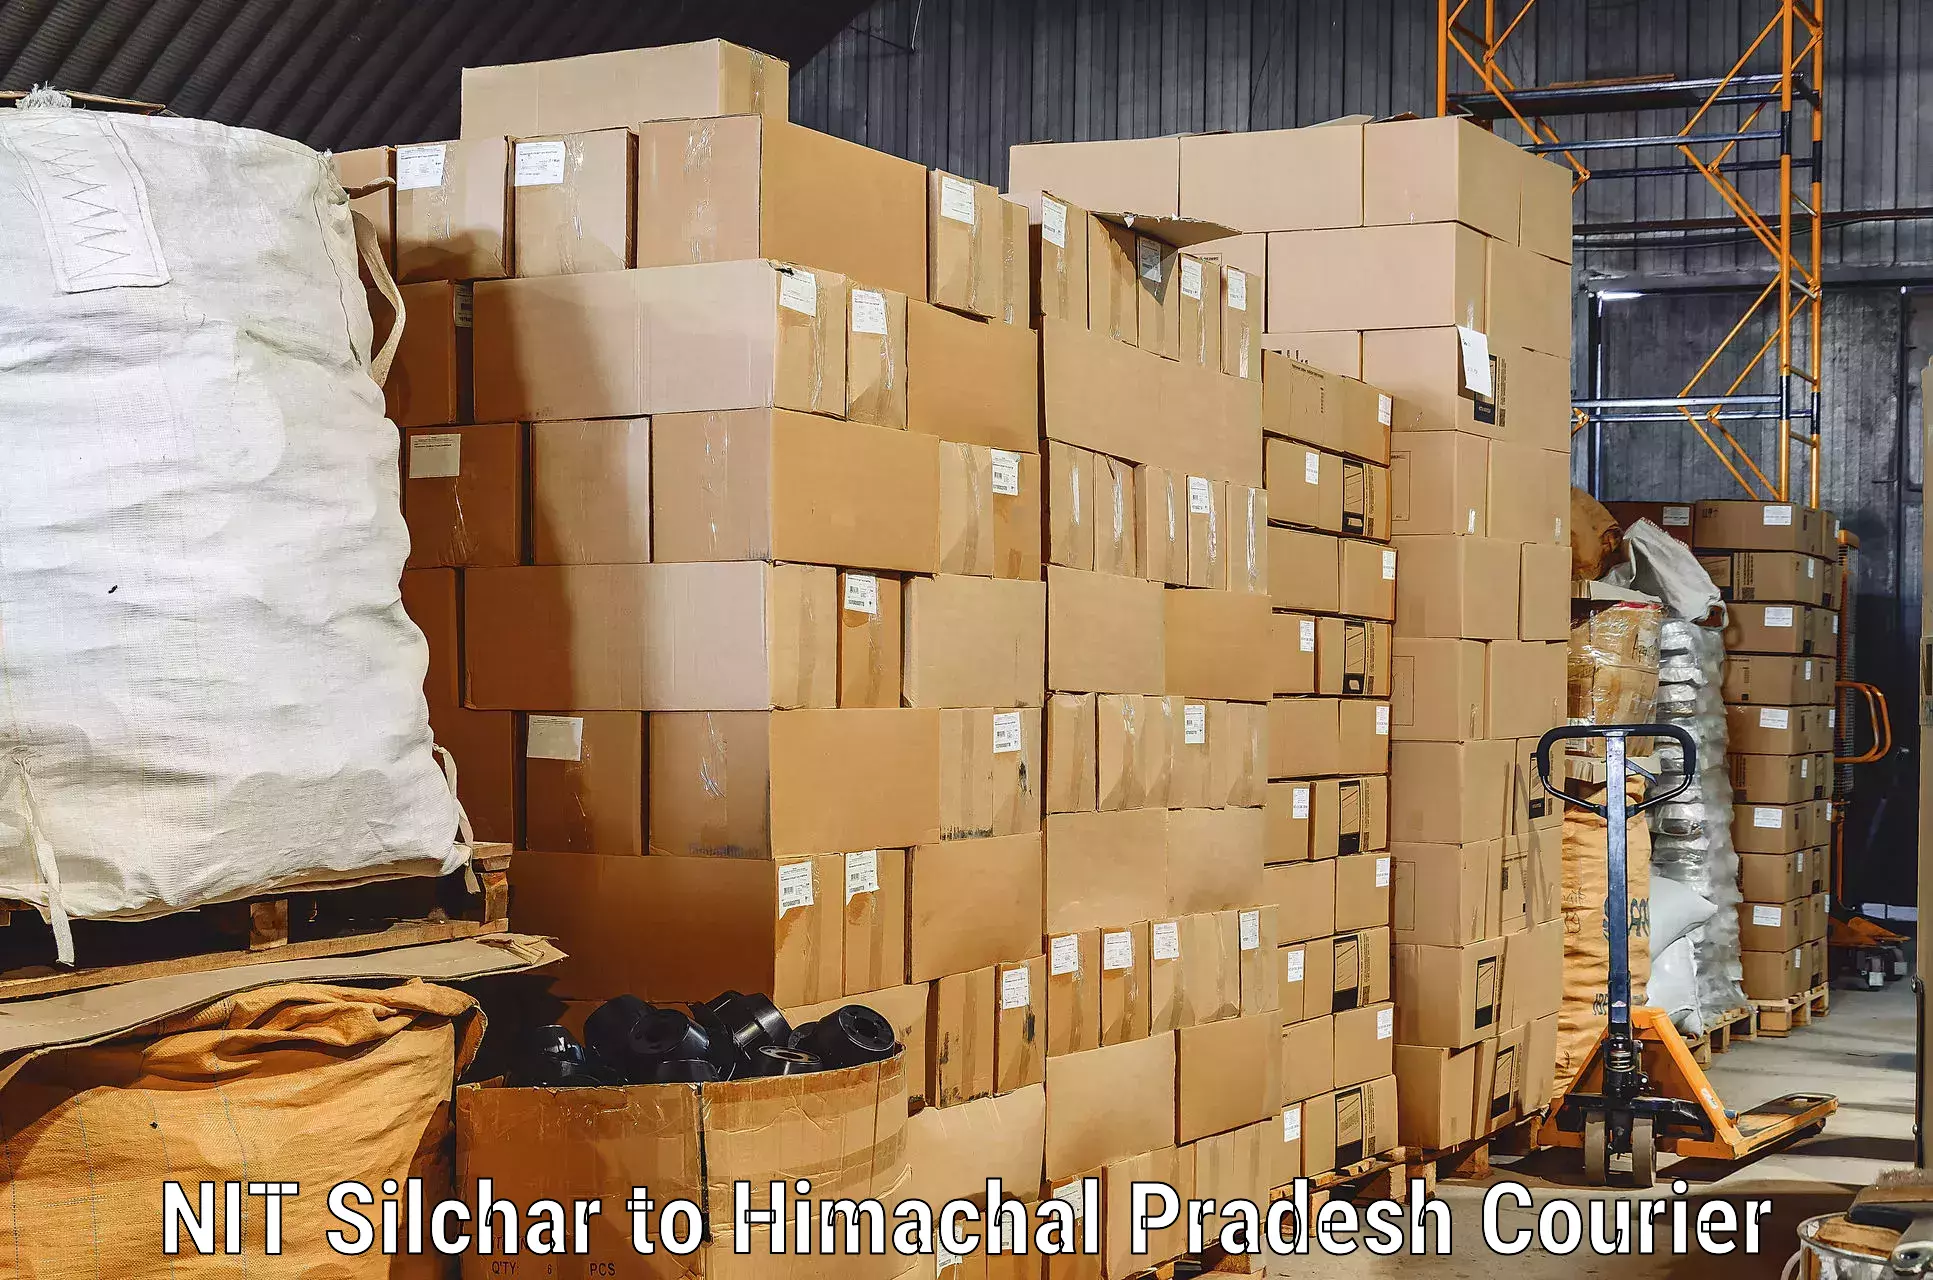 Efficient moving services NIT Silchar to Joginder Nagar